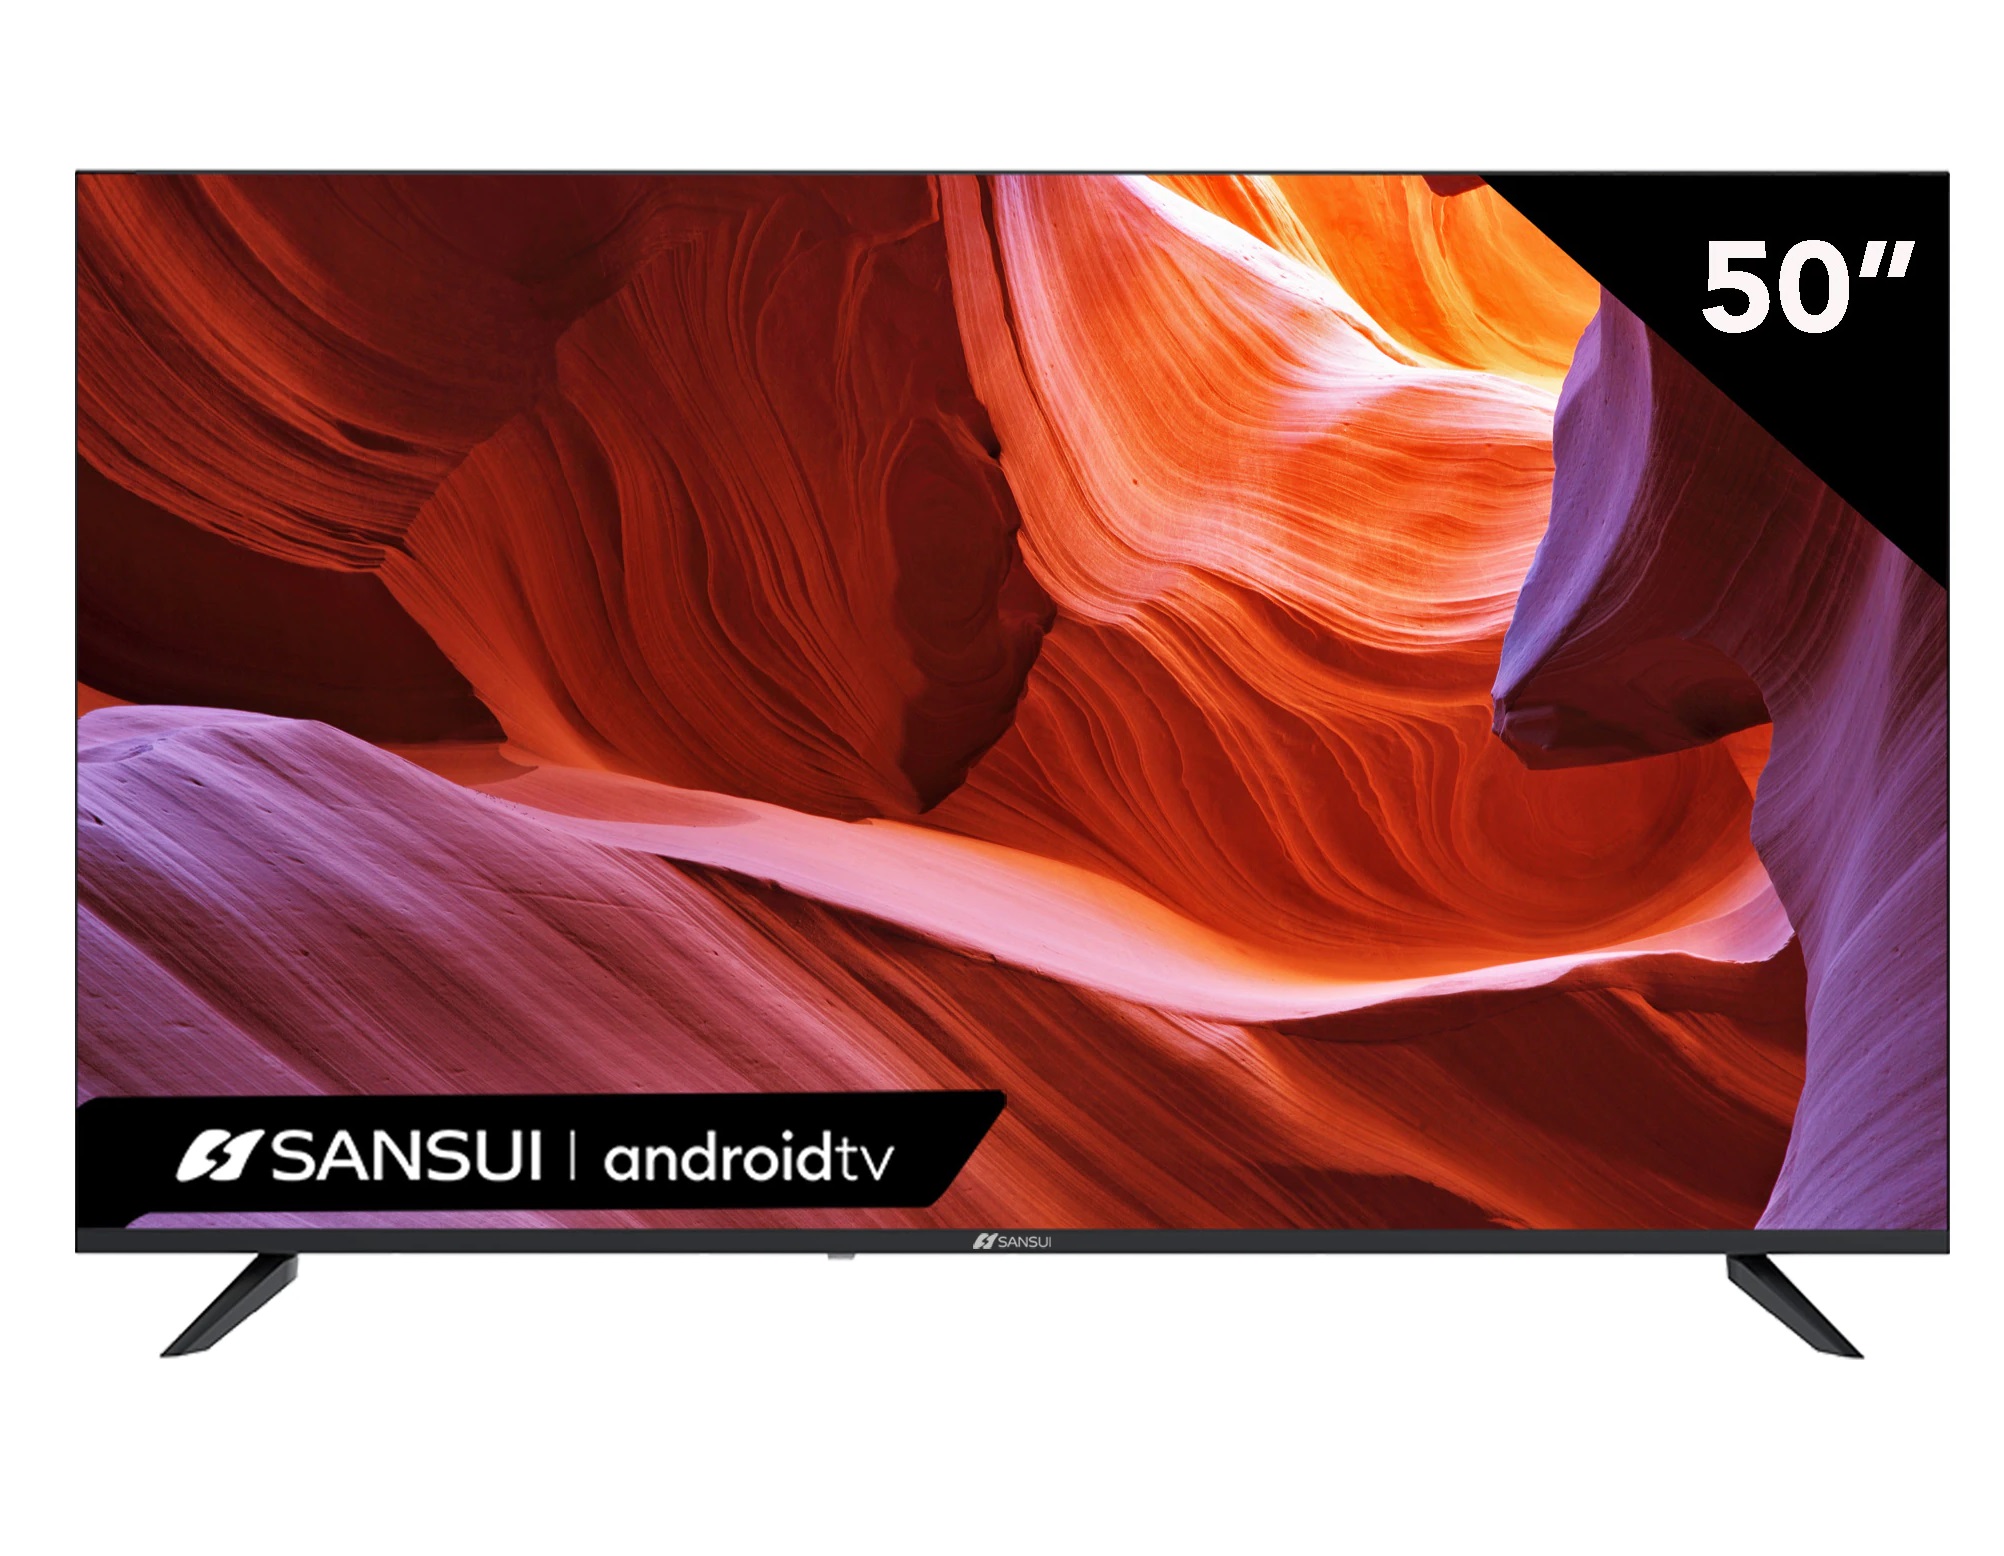 pantalla-sansui-smart-tv-android-tv-50-4k-ultra-hd-smx50v1ua-control-de-voz-en-control-remoto